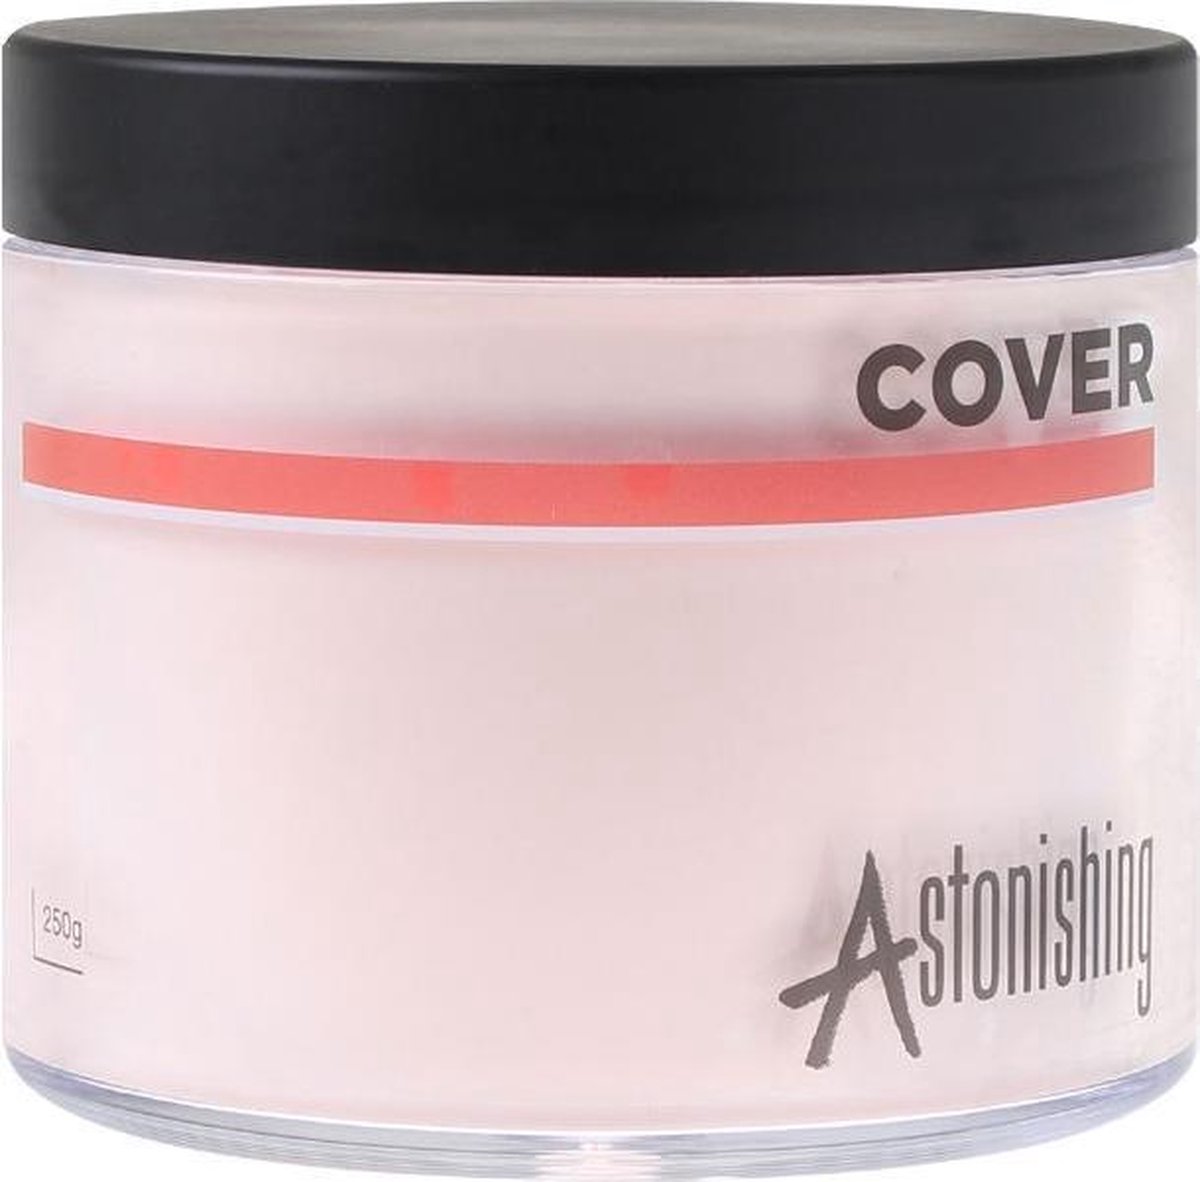 Astonishing Acrylic Powder Cover 250g